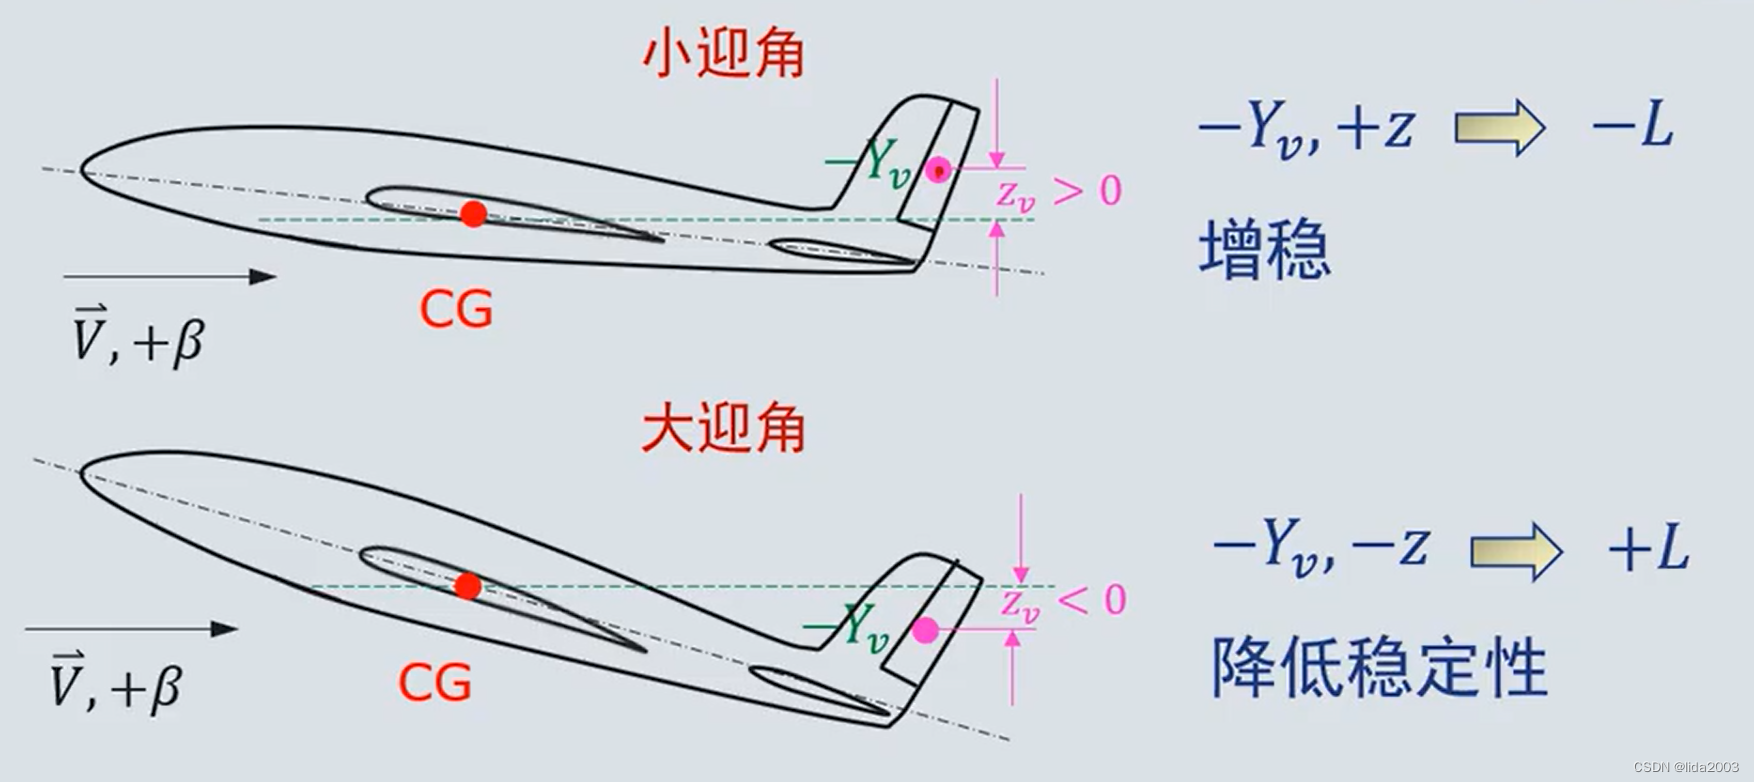 飞行动力学 - 第20节-part3-机翼位置及尾翼对横向稳定性影响 之 基础点摘要